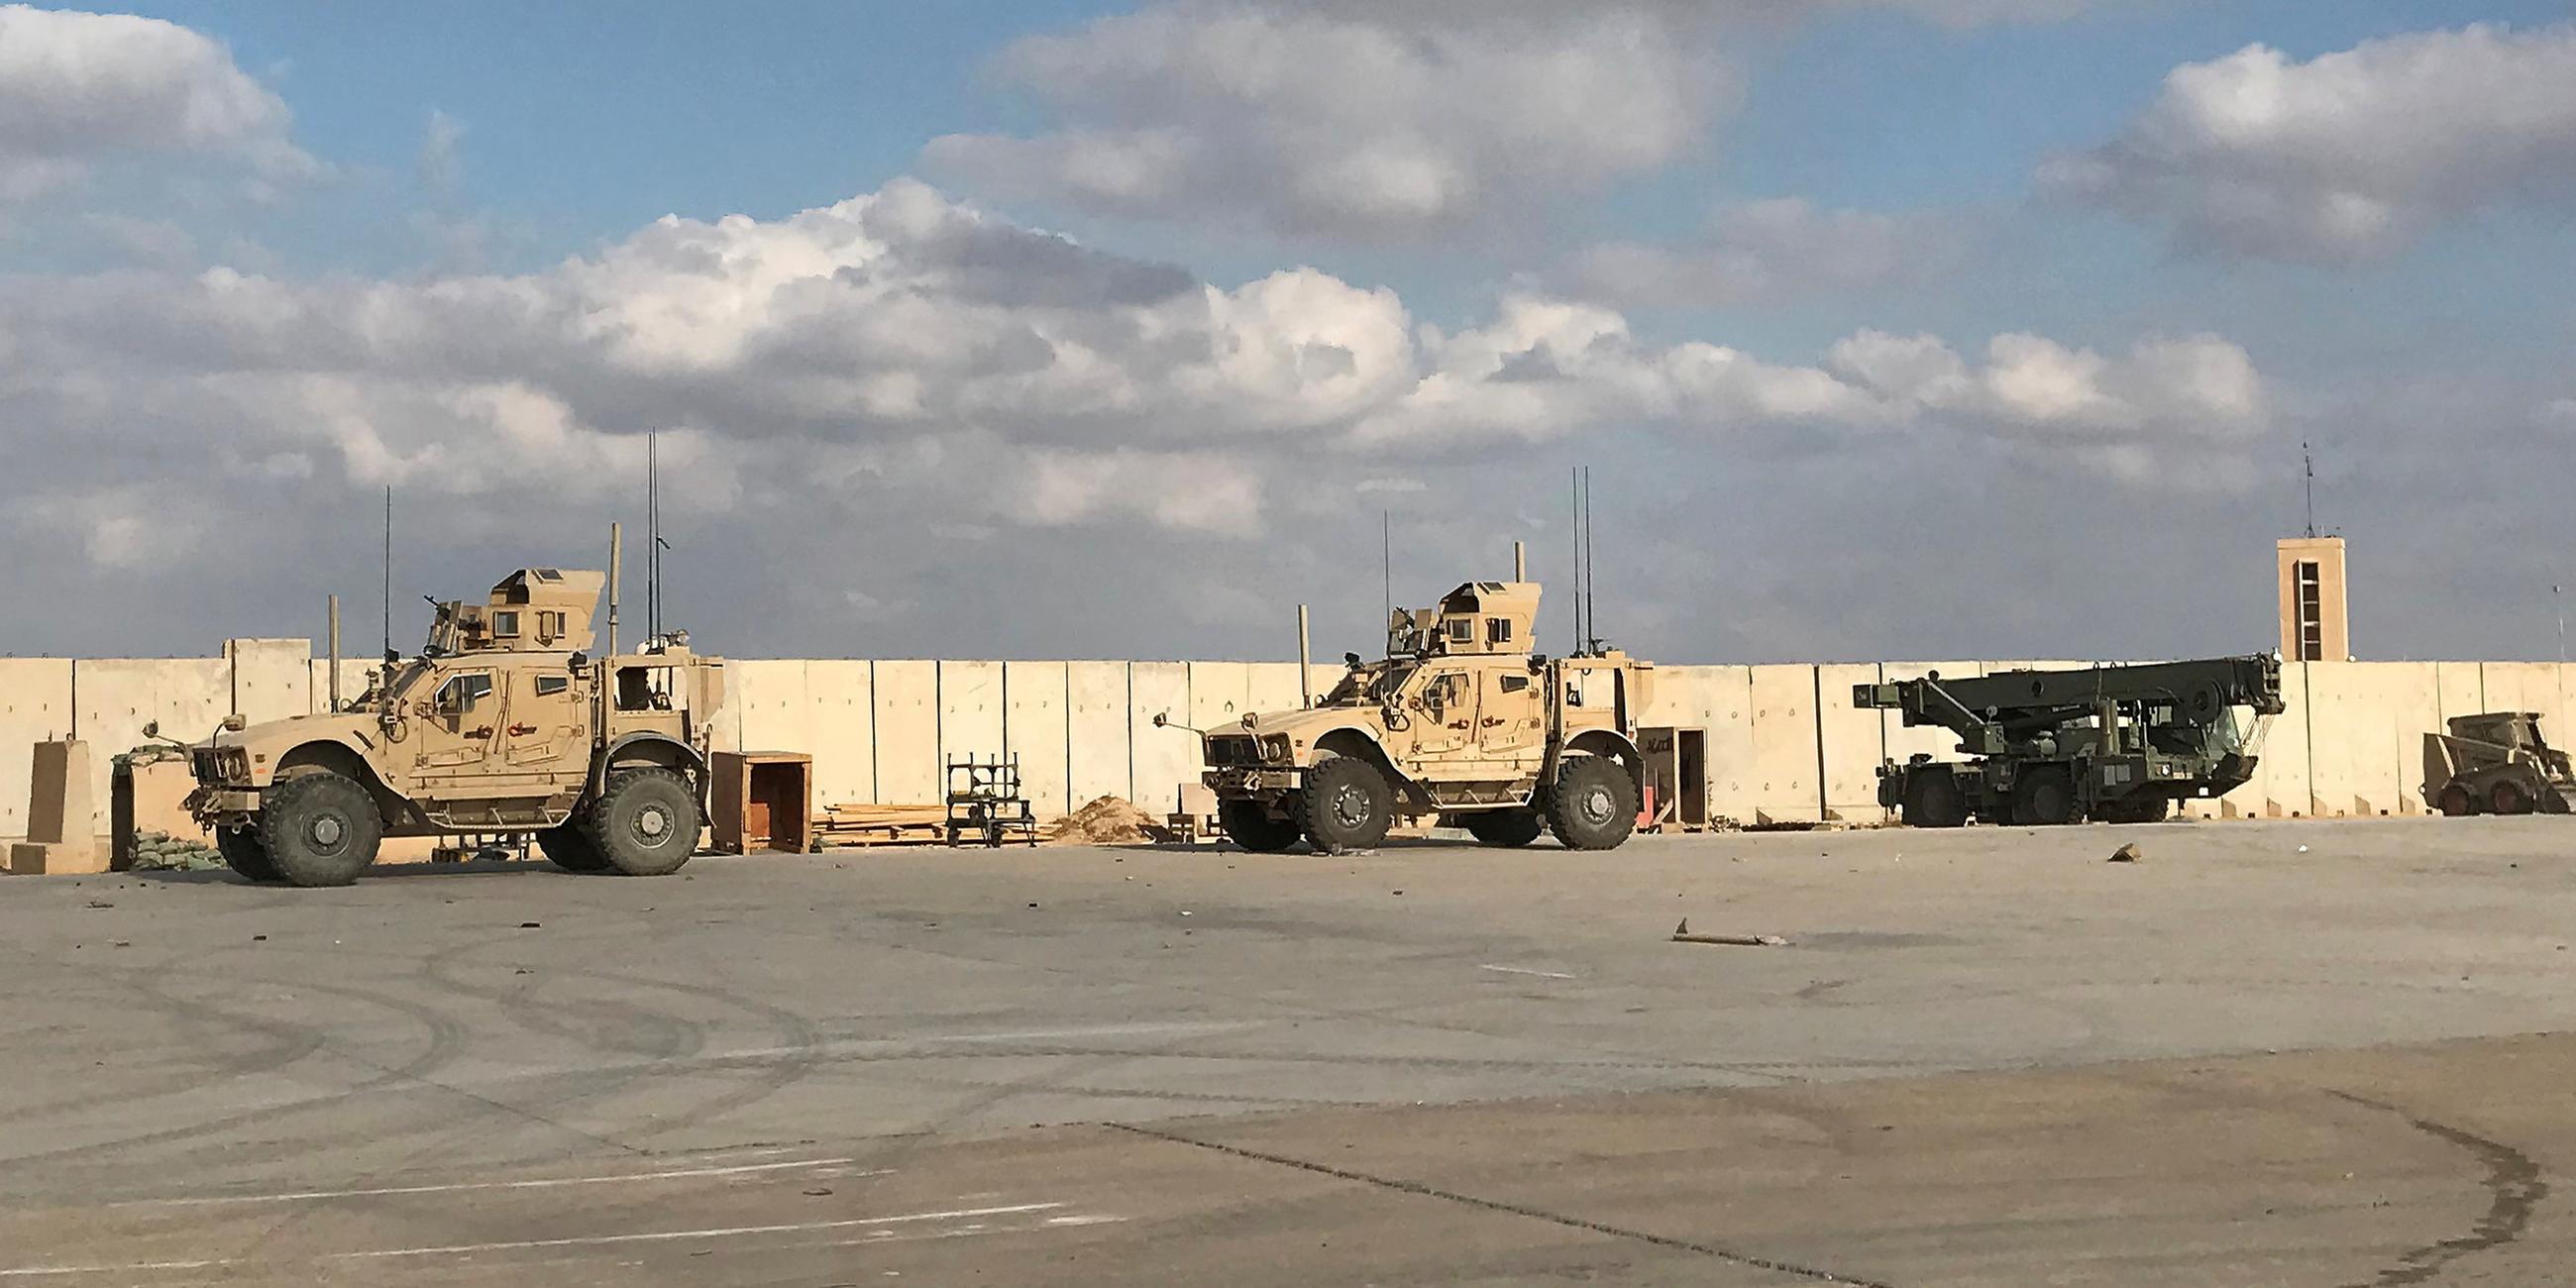 Archiv: Militärfahrzeuge von US-Soldaten auf dem Luftwaffenstützpunkt al-Asad in der irakischen Provinz Anbar. (13.01.2020)